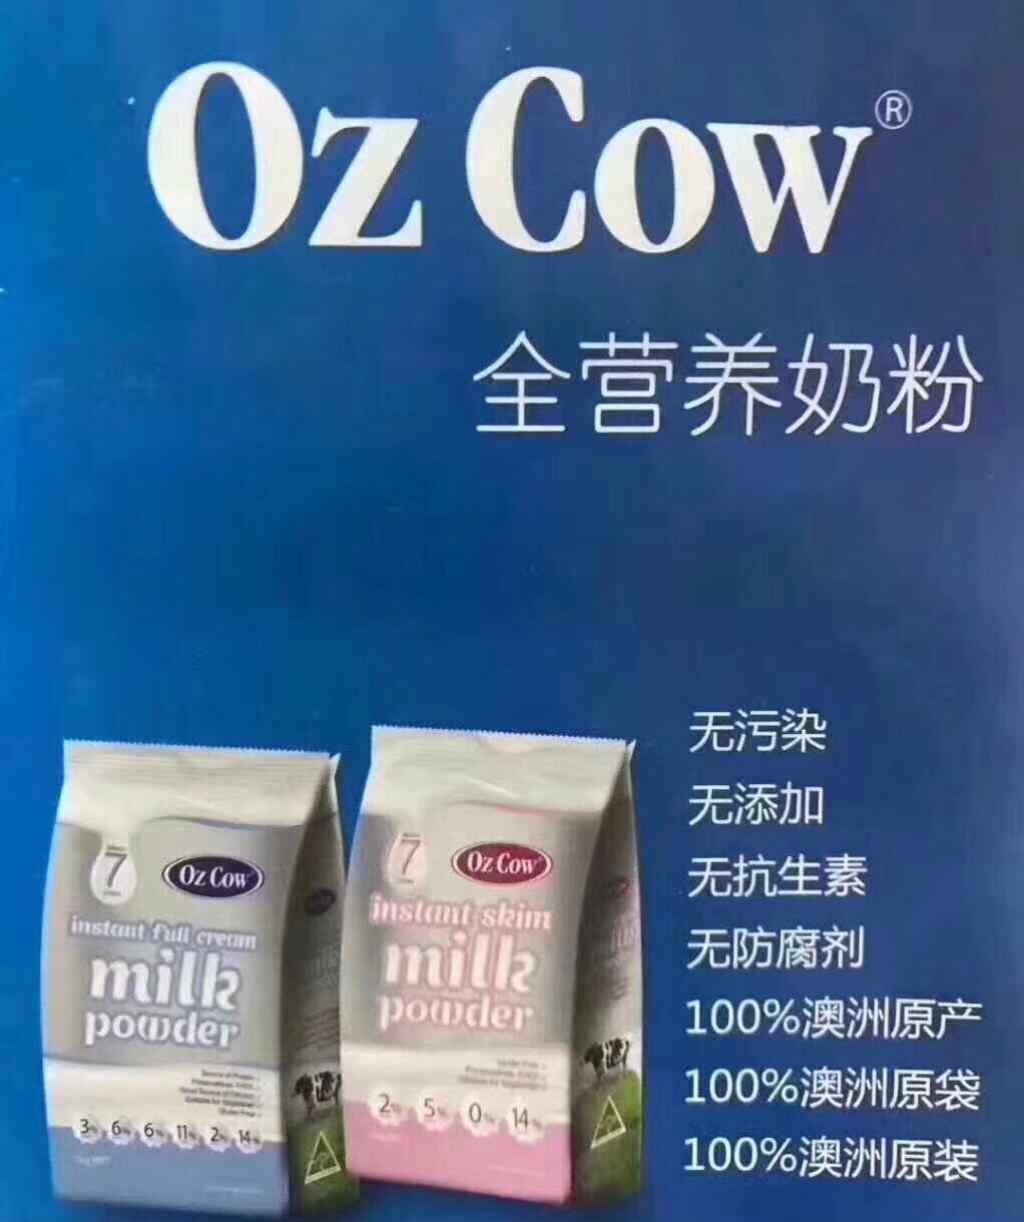 脱脂奶和全脂奶区别 OzCoW脱脂奶粉和全脂奶粉的区别